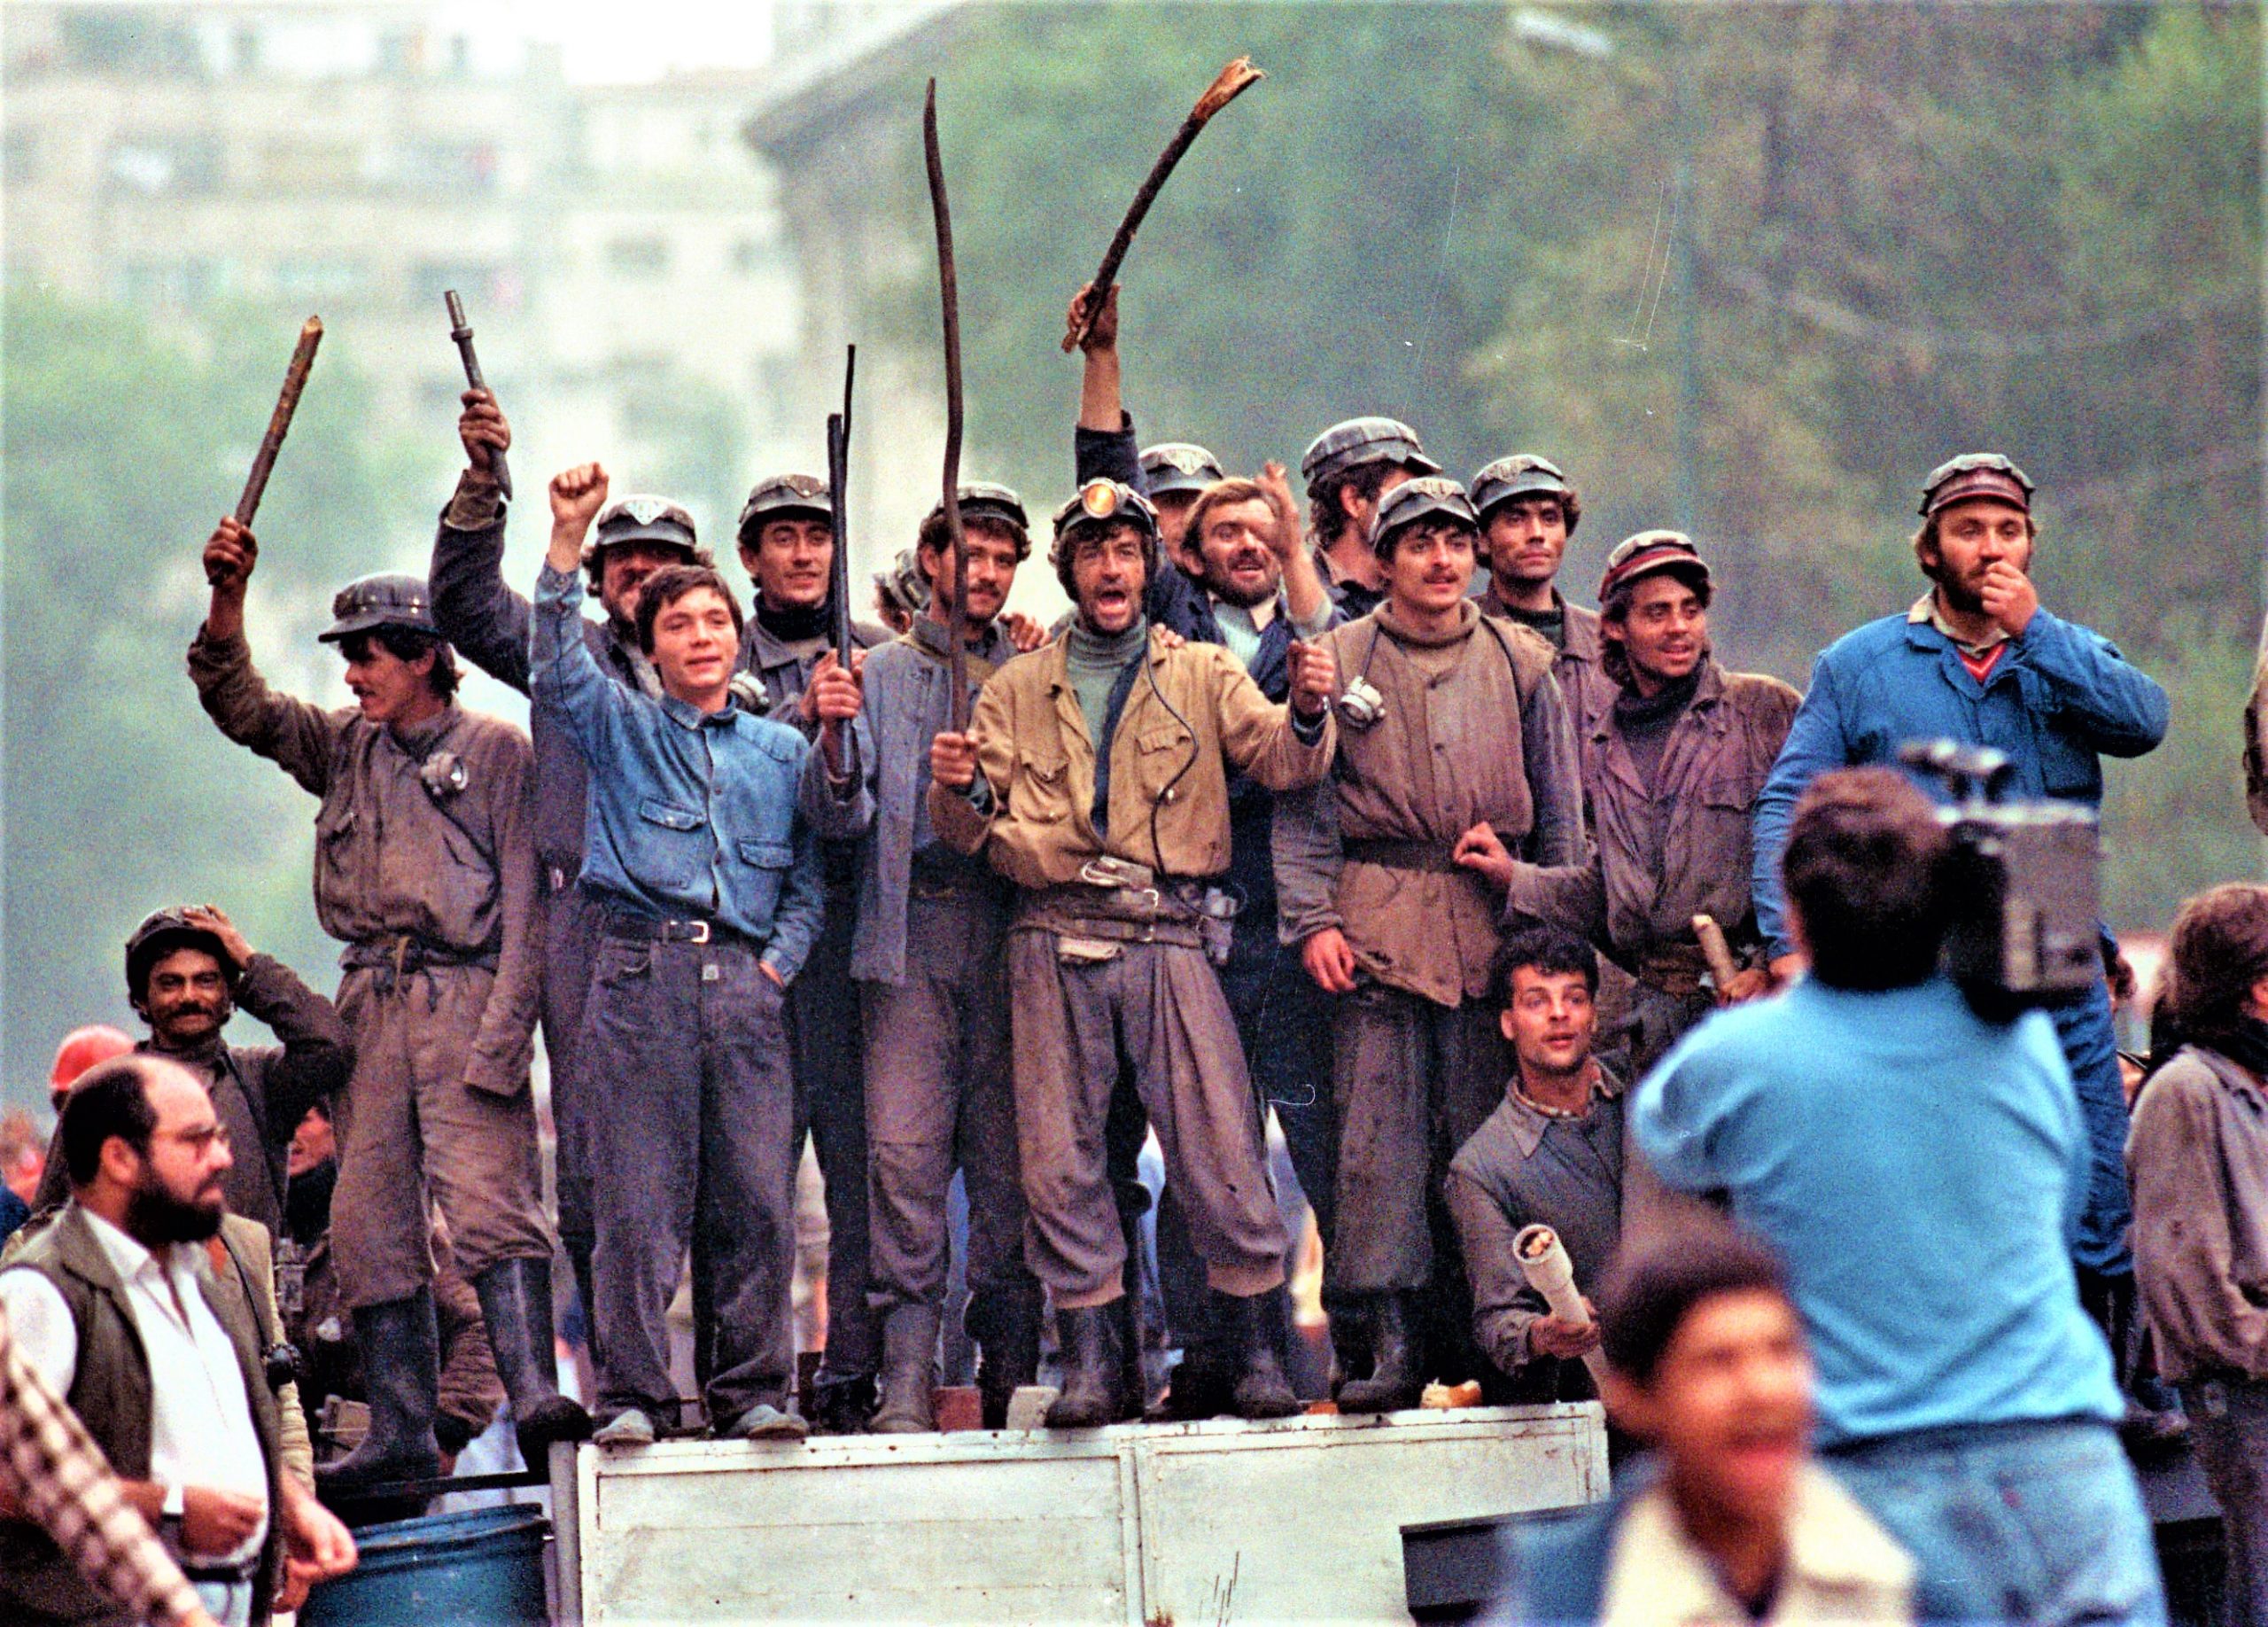 La Mineriada 13-15 iunie 1990, au fost atrocități greu de imaginat